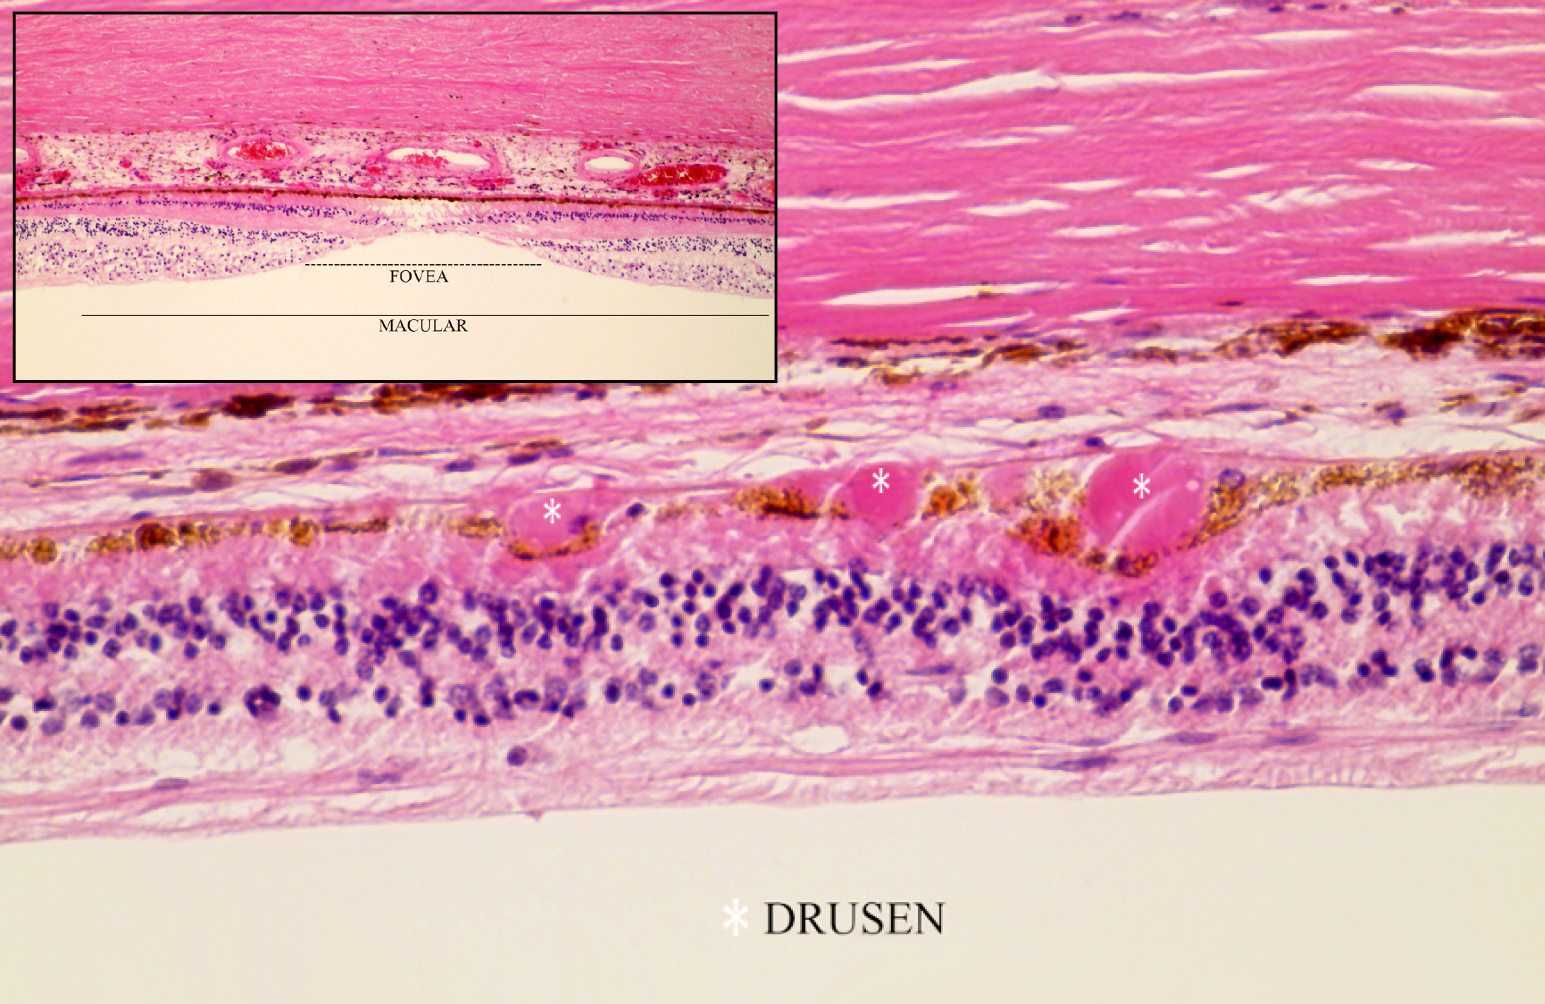 Image showing drusen deposits on retina